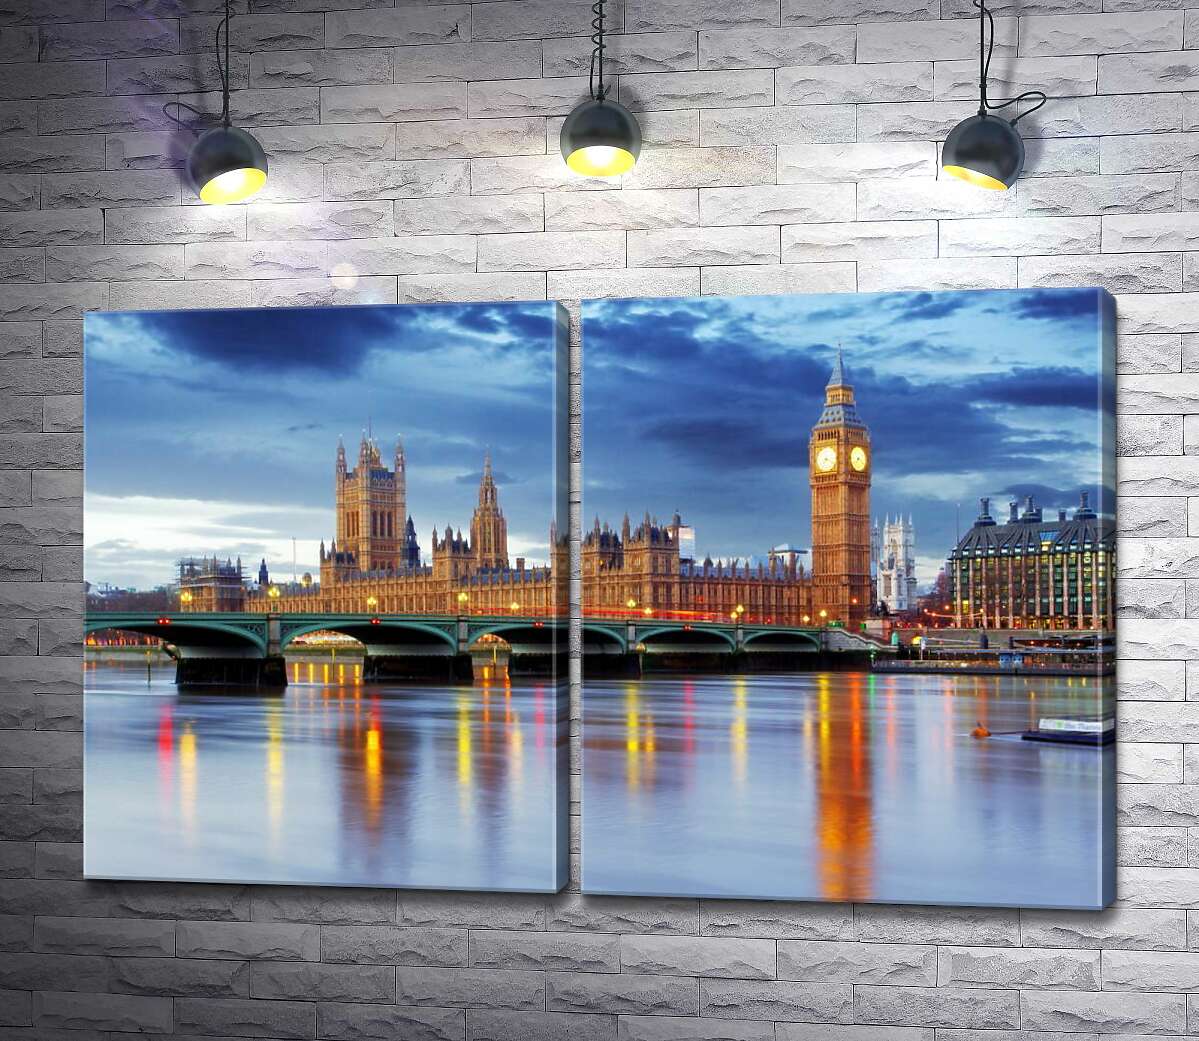 модульная картина Здание британского парламента и знаменитый Биг-Бен (Big Ben) виднеются из-за моста через Темзу